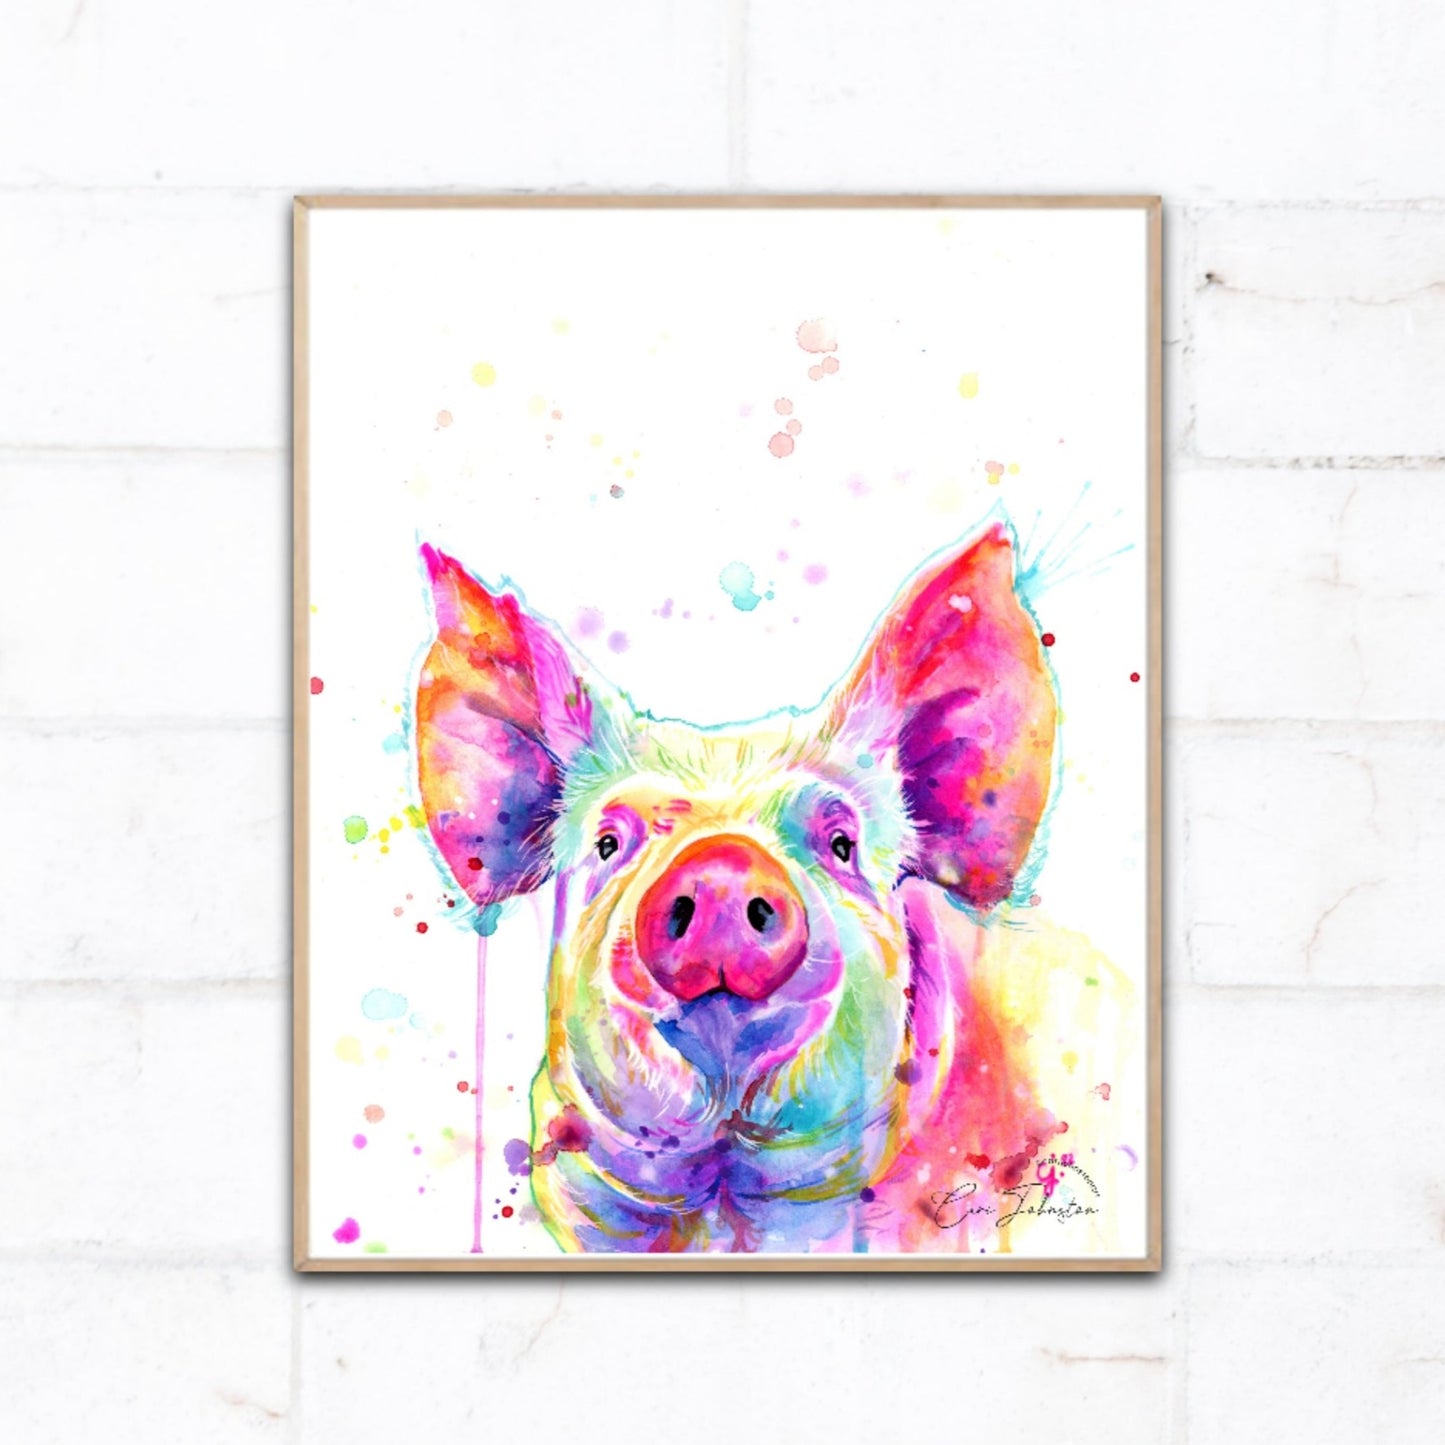 Pig Original Watercolour Painting